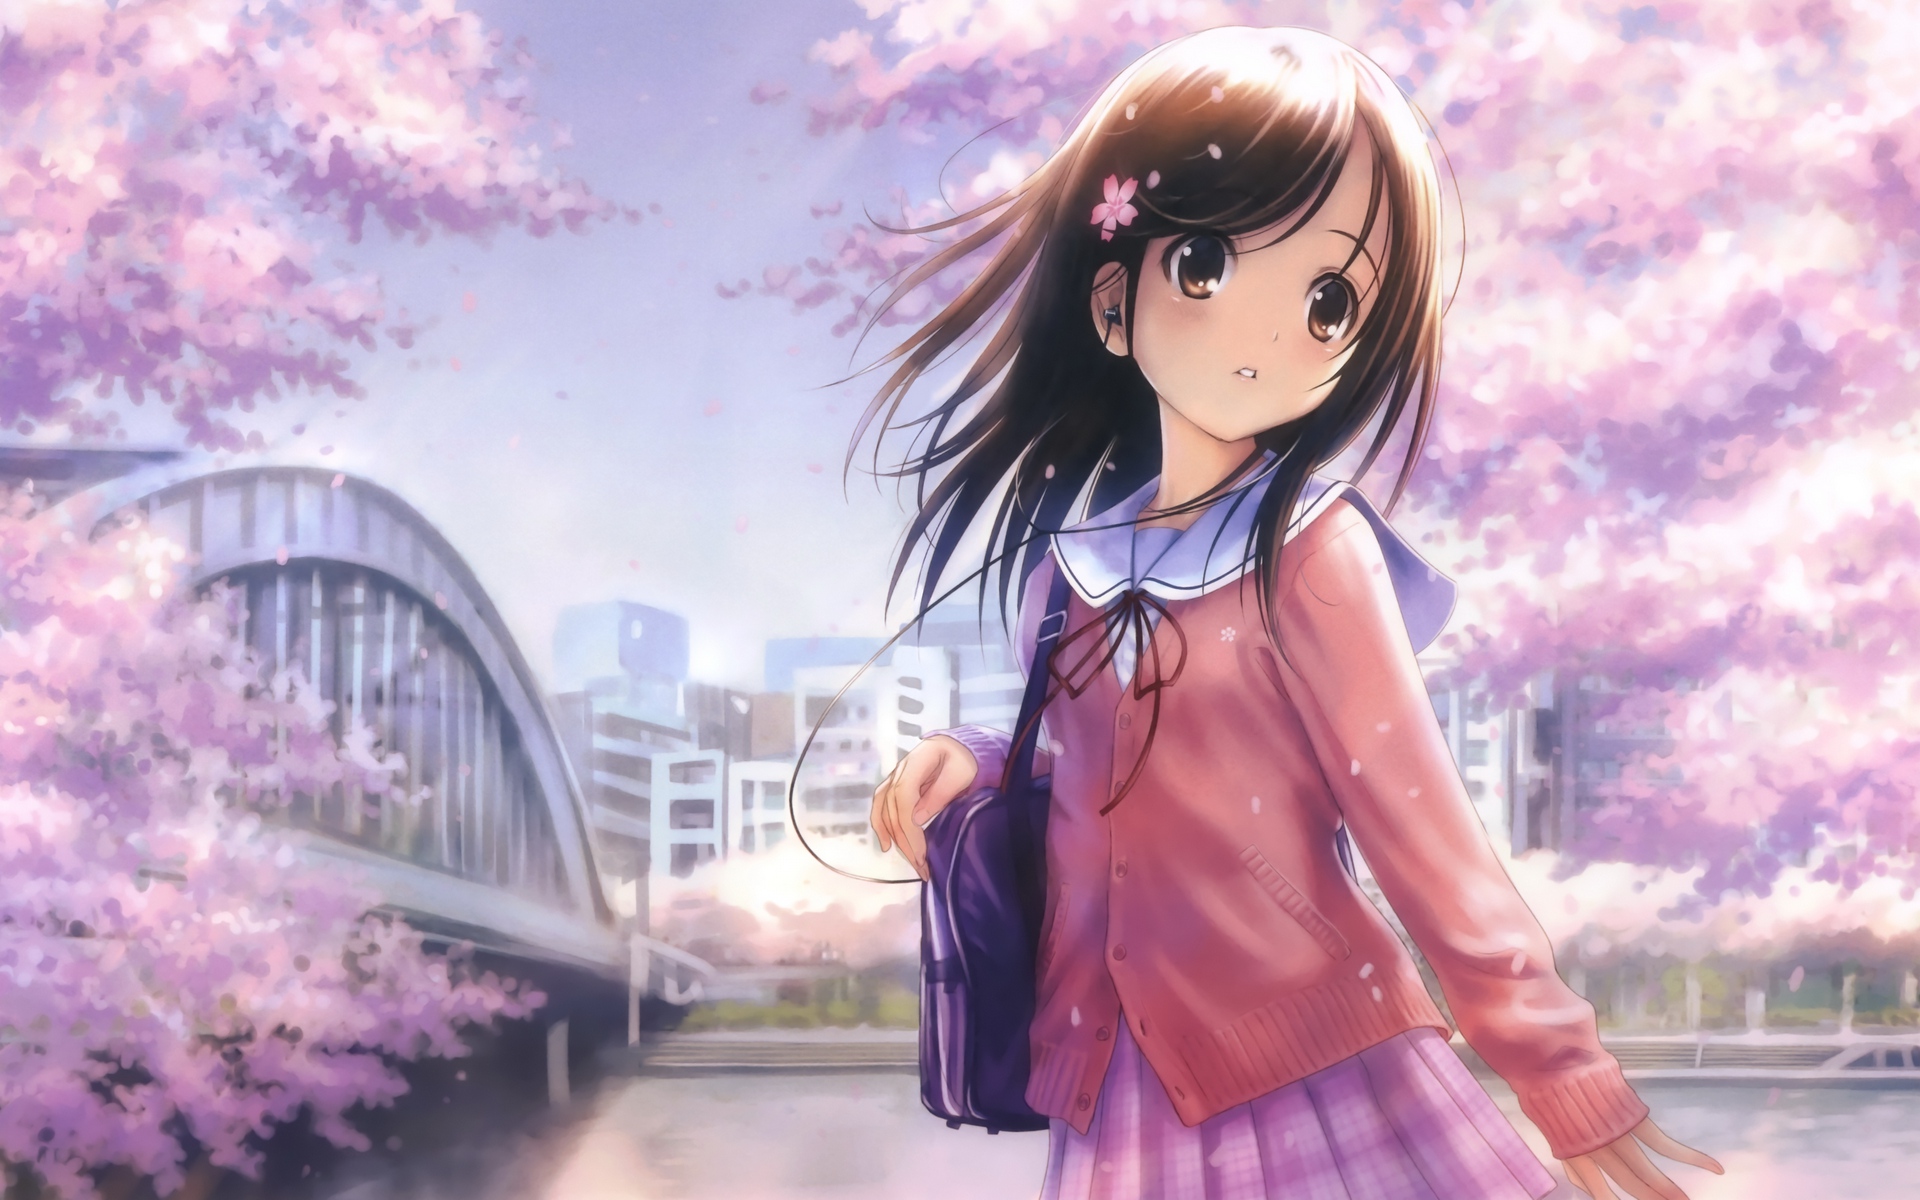 28+] Cute Anime Girls Wallpapers - WallpaperSafari